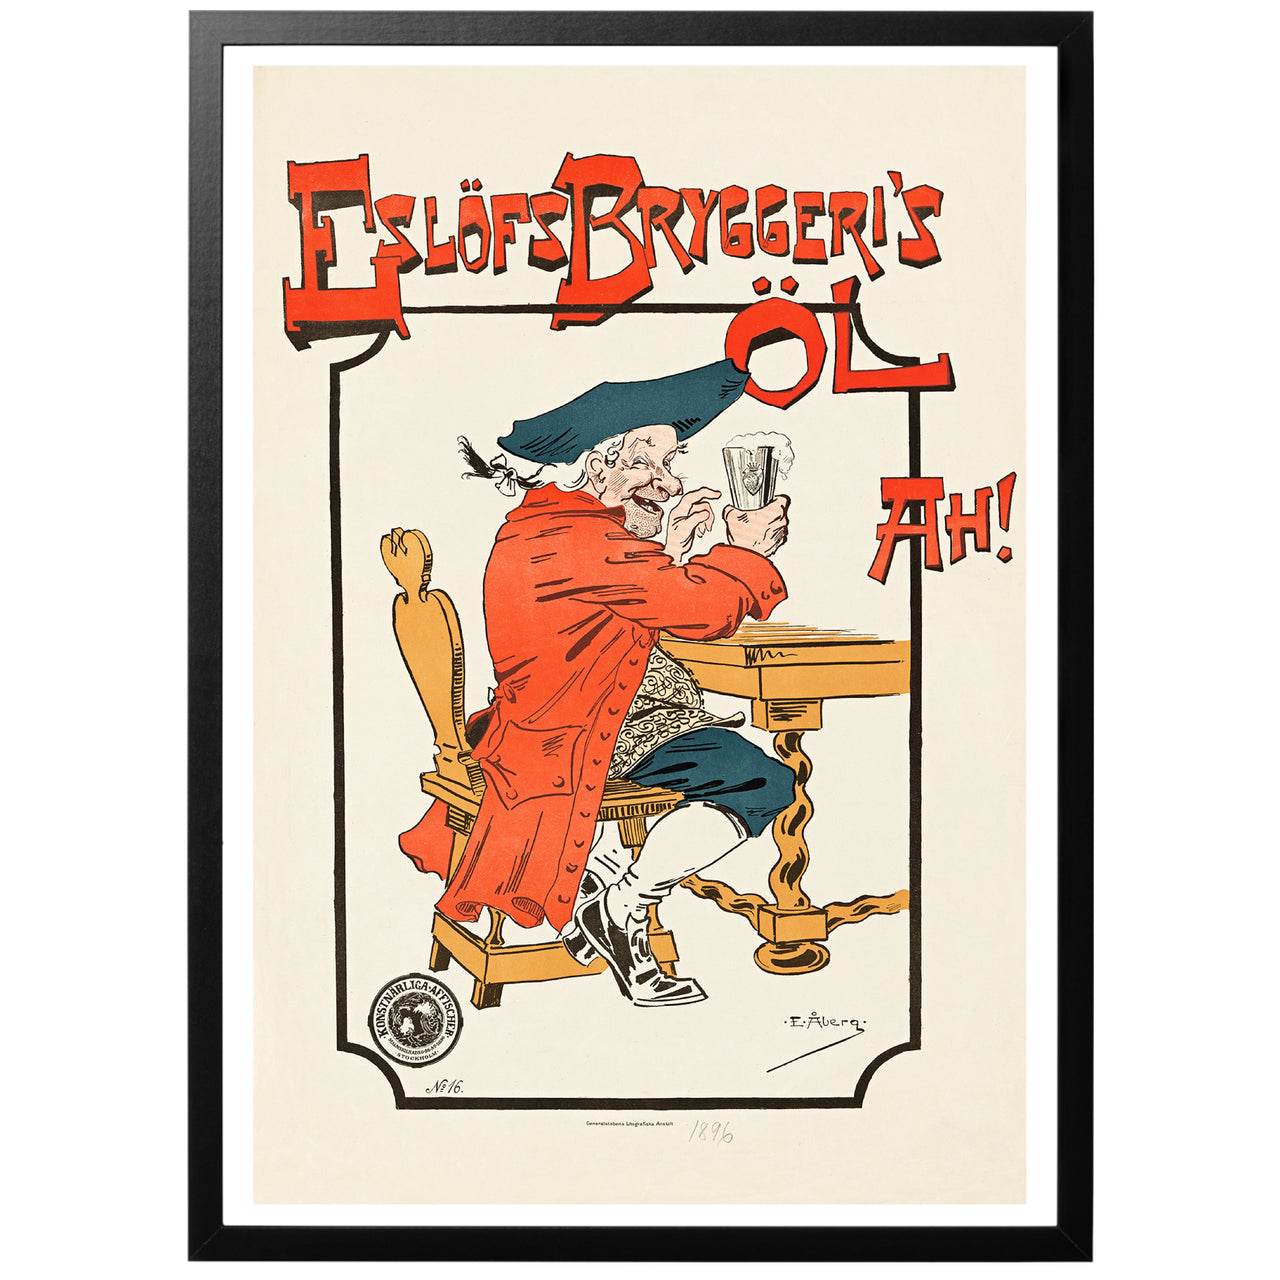 Eslöfs bryggeris öl vintage poster with frame